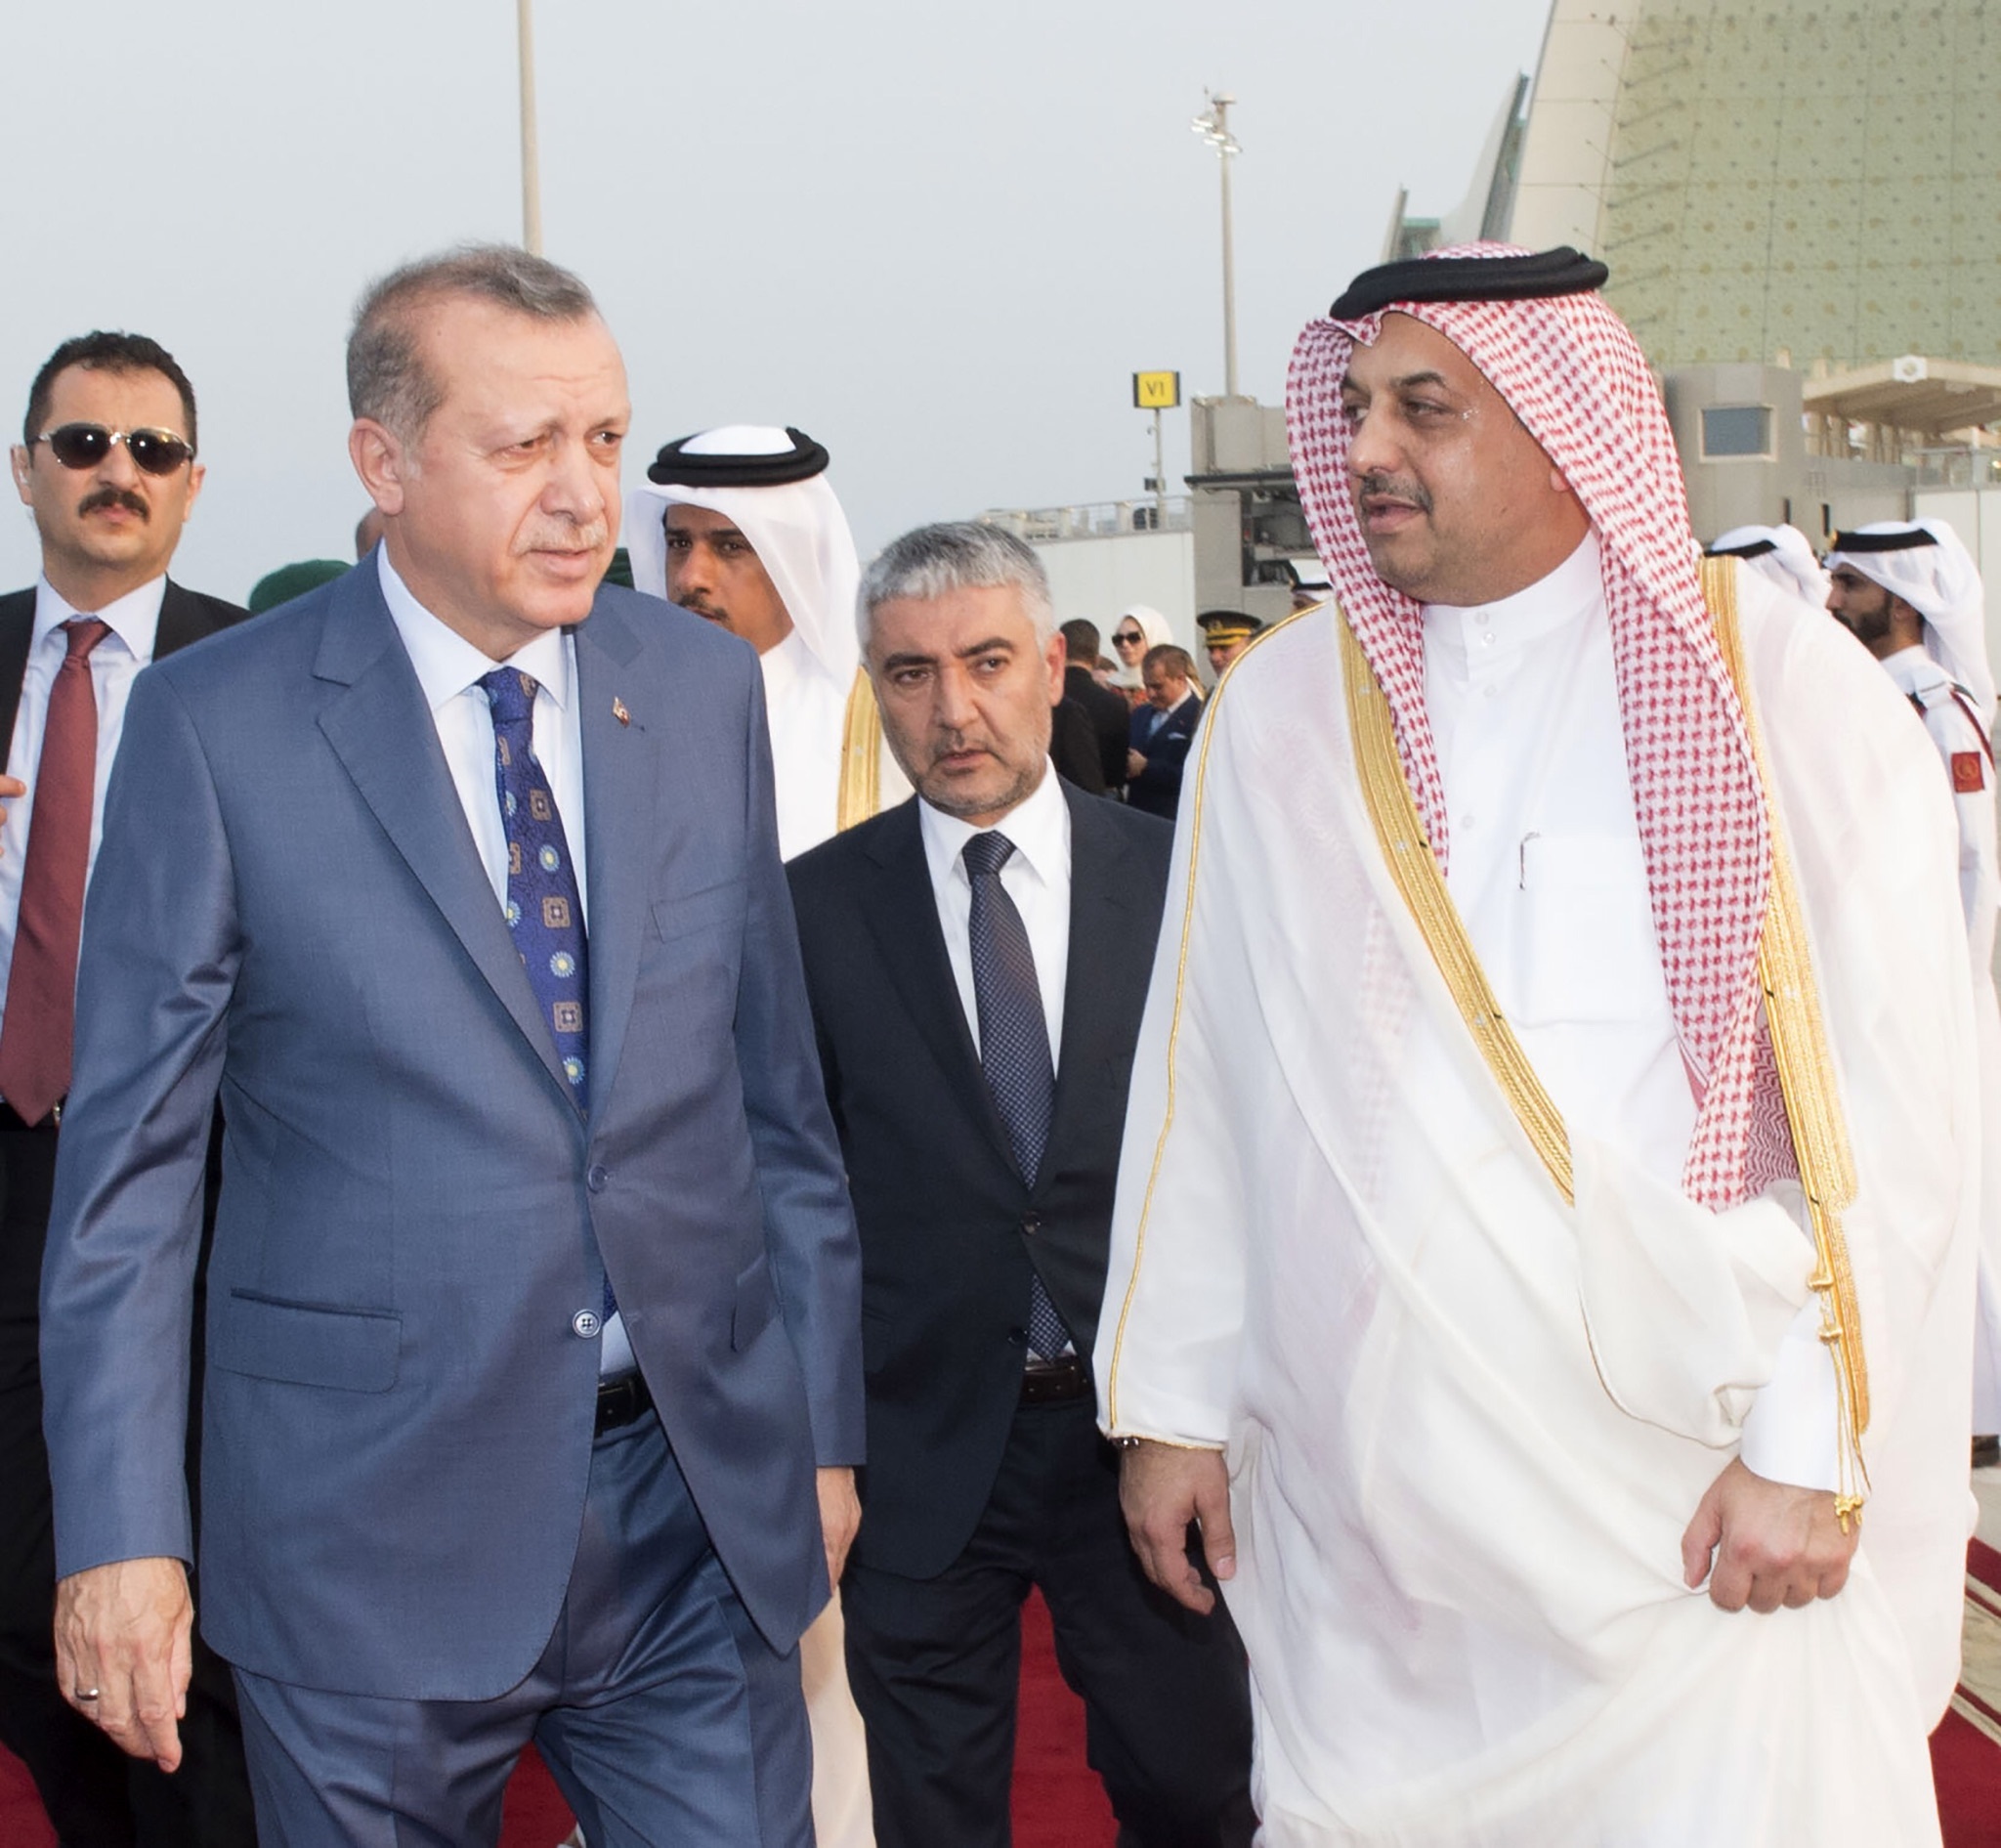  الرئيس التركي رجب طيب أردوغان يغادر الدوحة